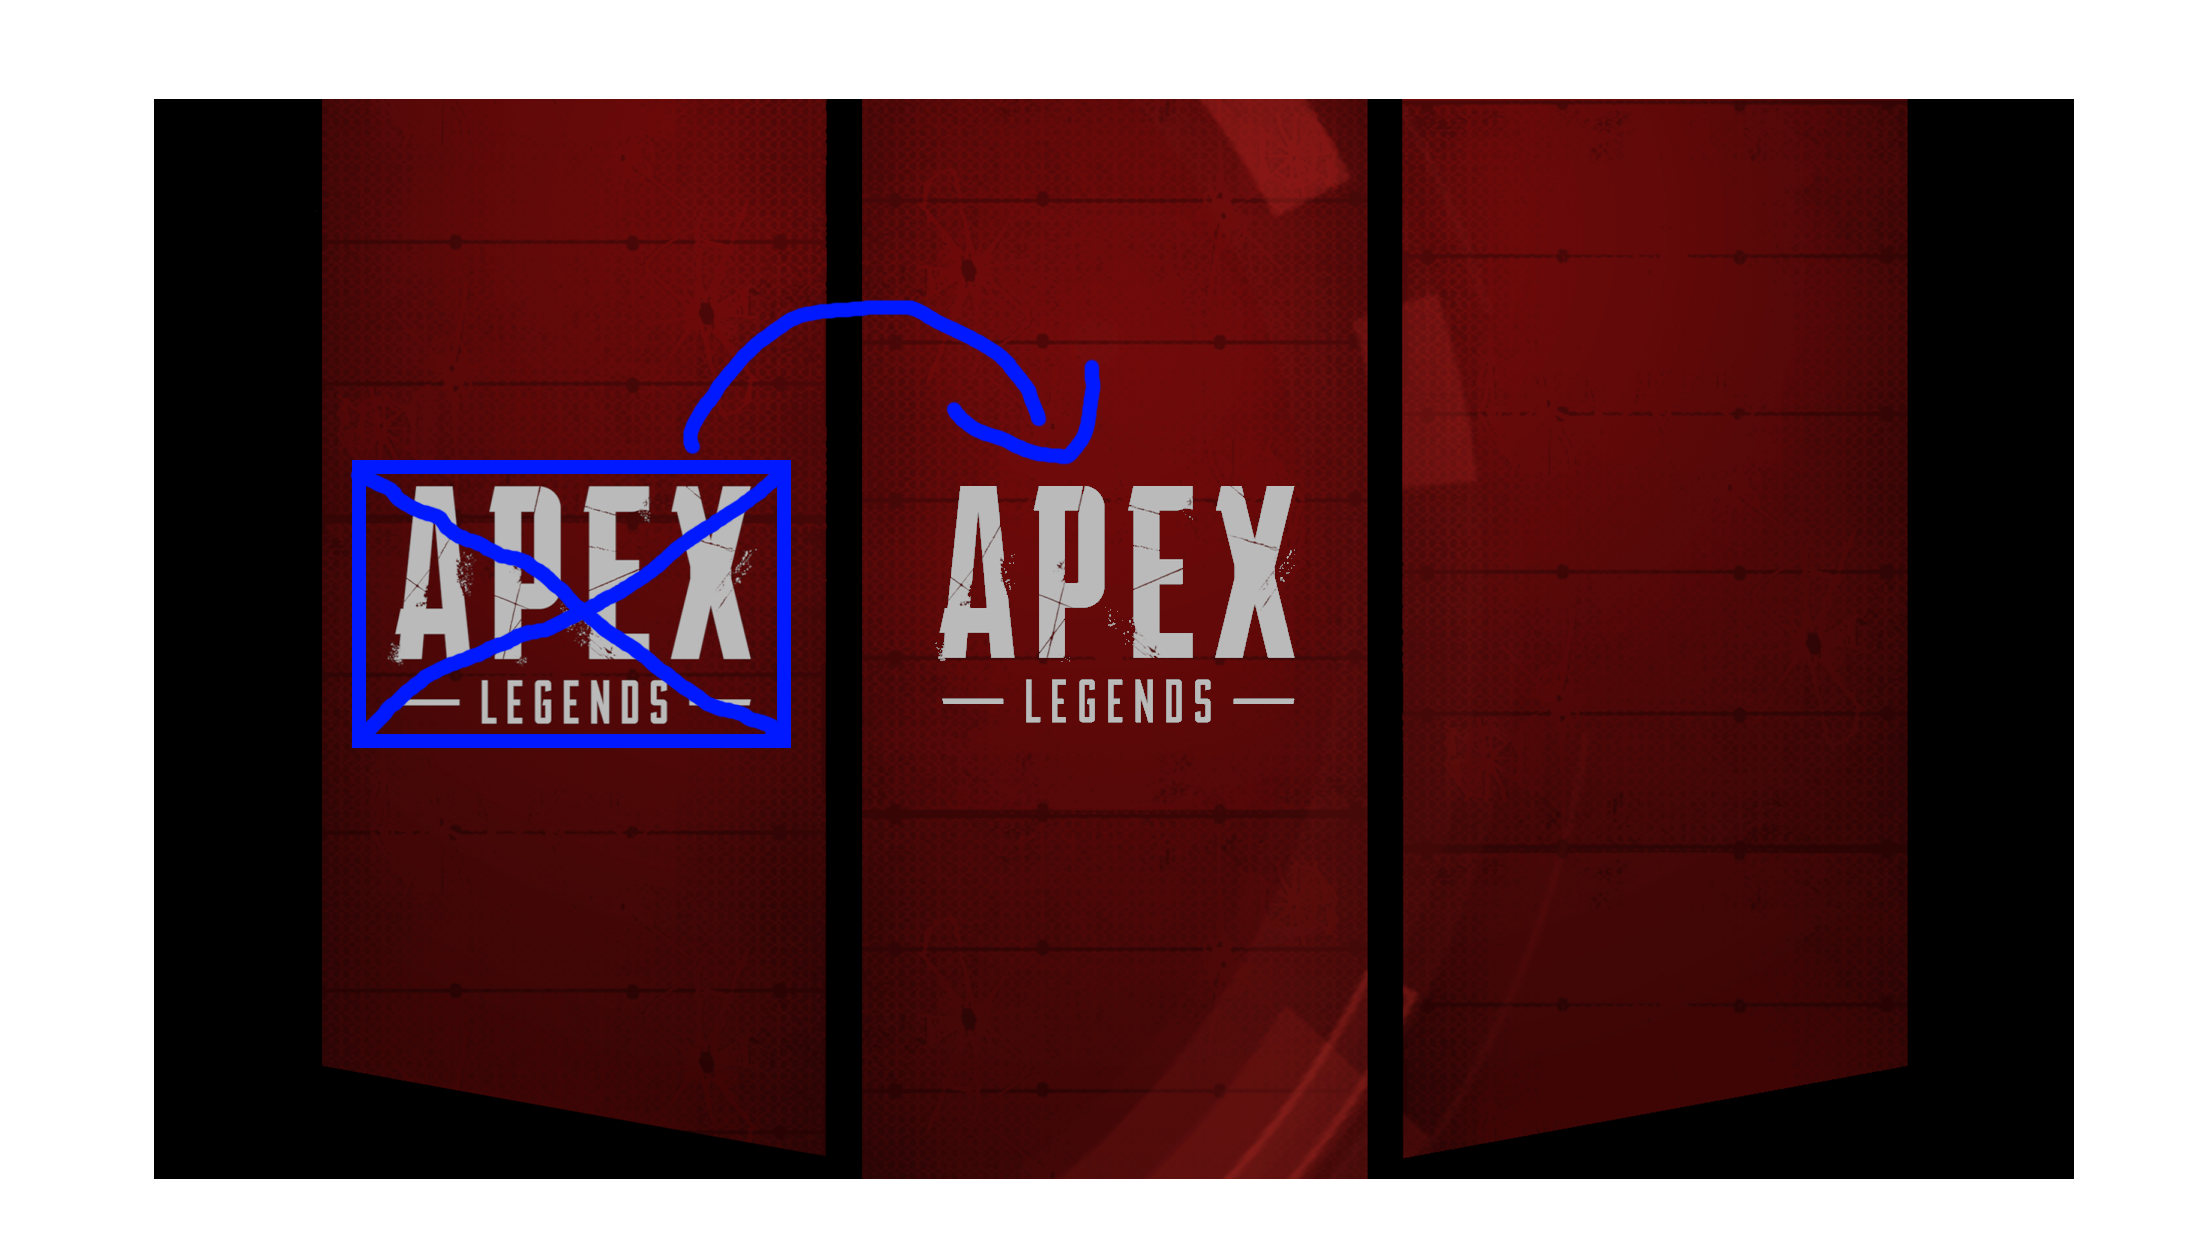 Apex Legends Logo PNG High Definition Photo Image 2208x1242 pngteam.com